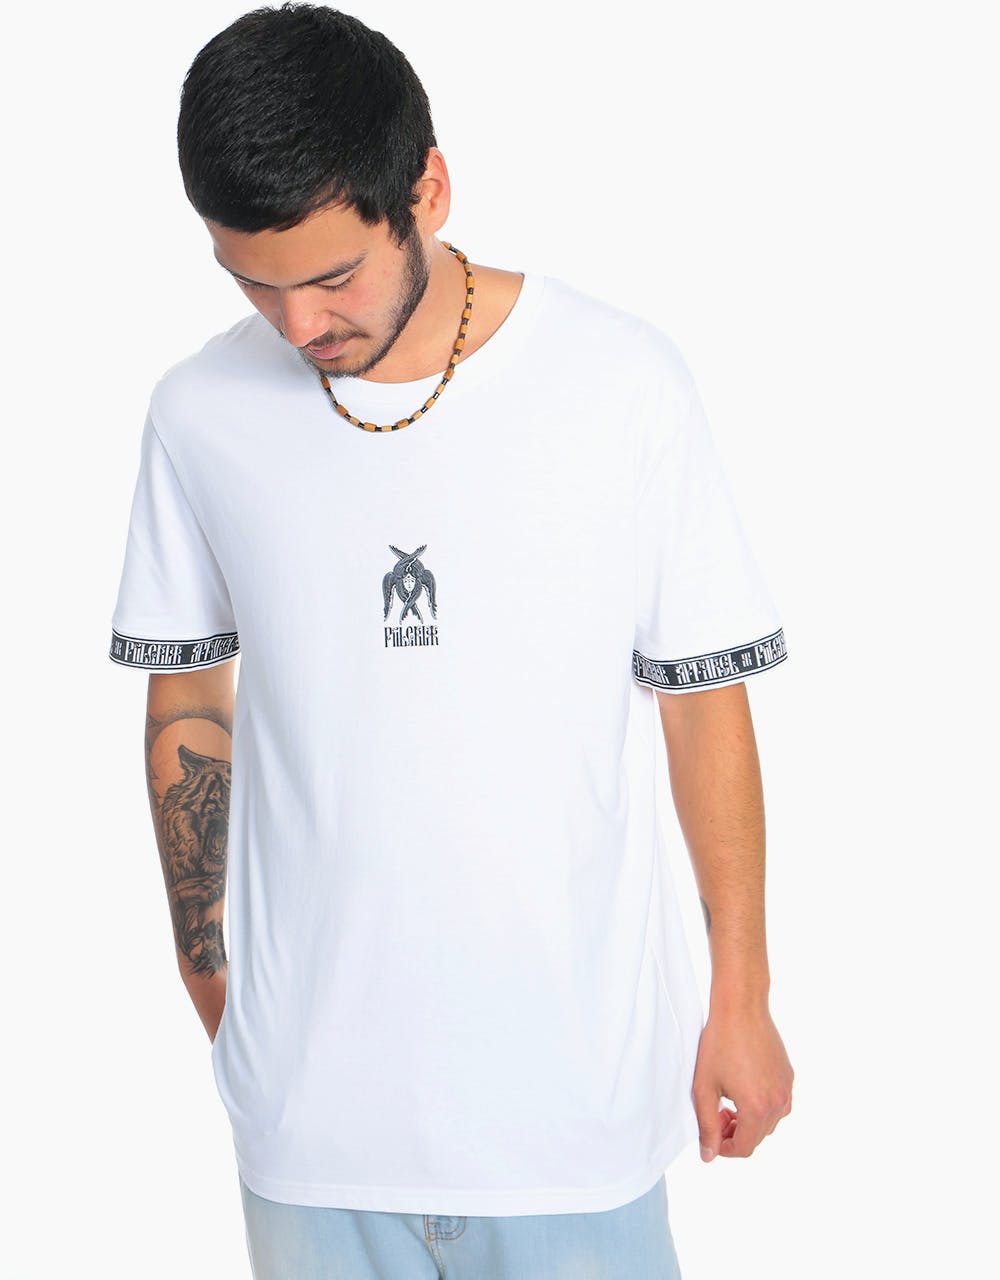 Piilgrim Inclusus T-Shirt - White